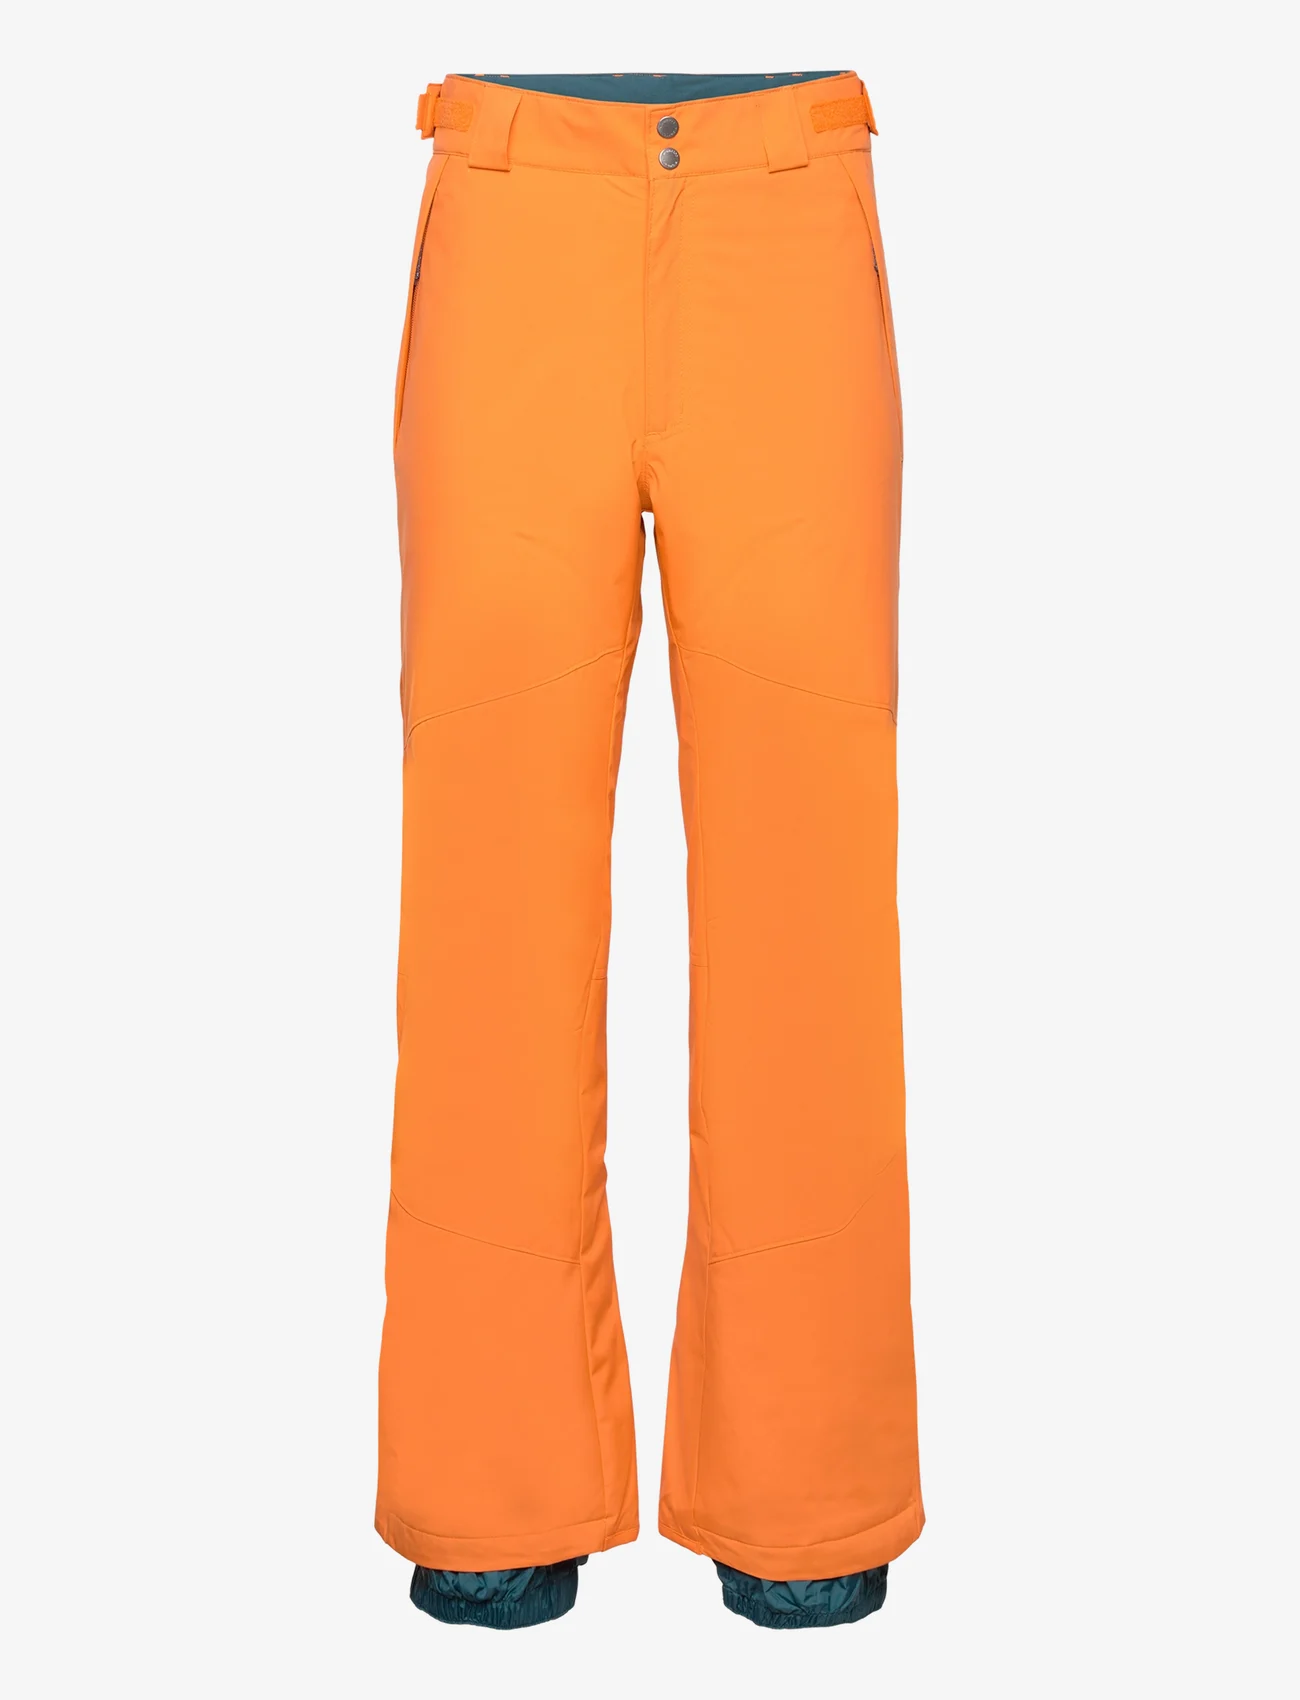 Columbia Sportswear - Shafer Canyon Pant - skibroeken - bright orange - 0